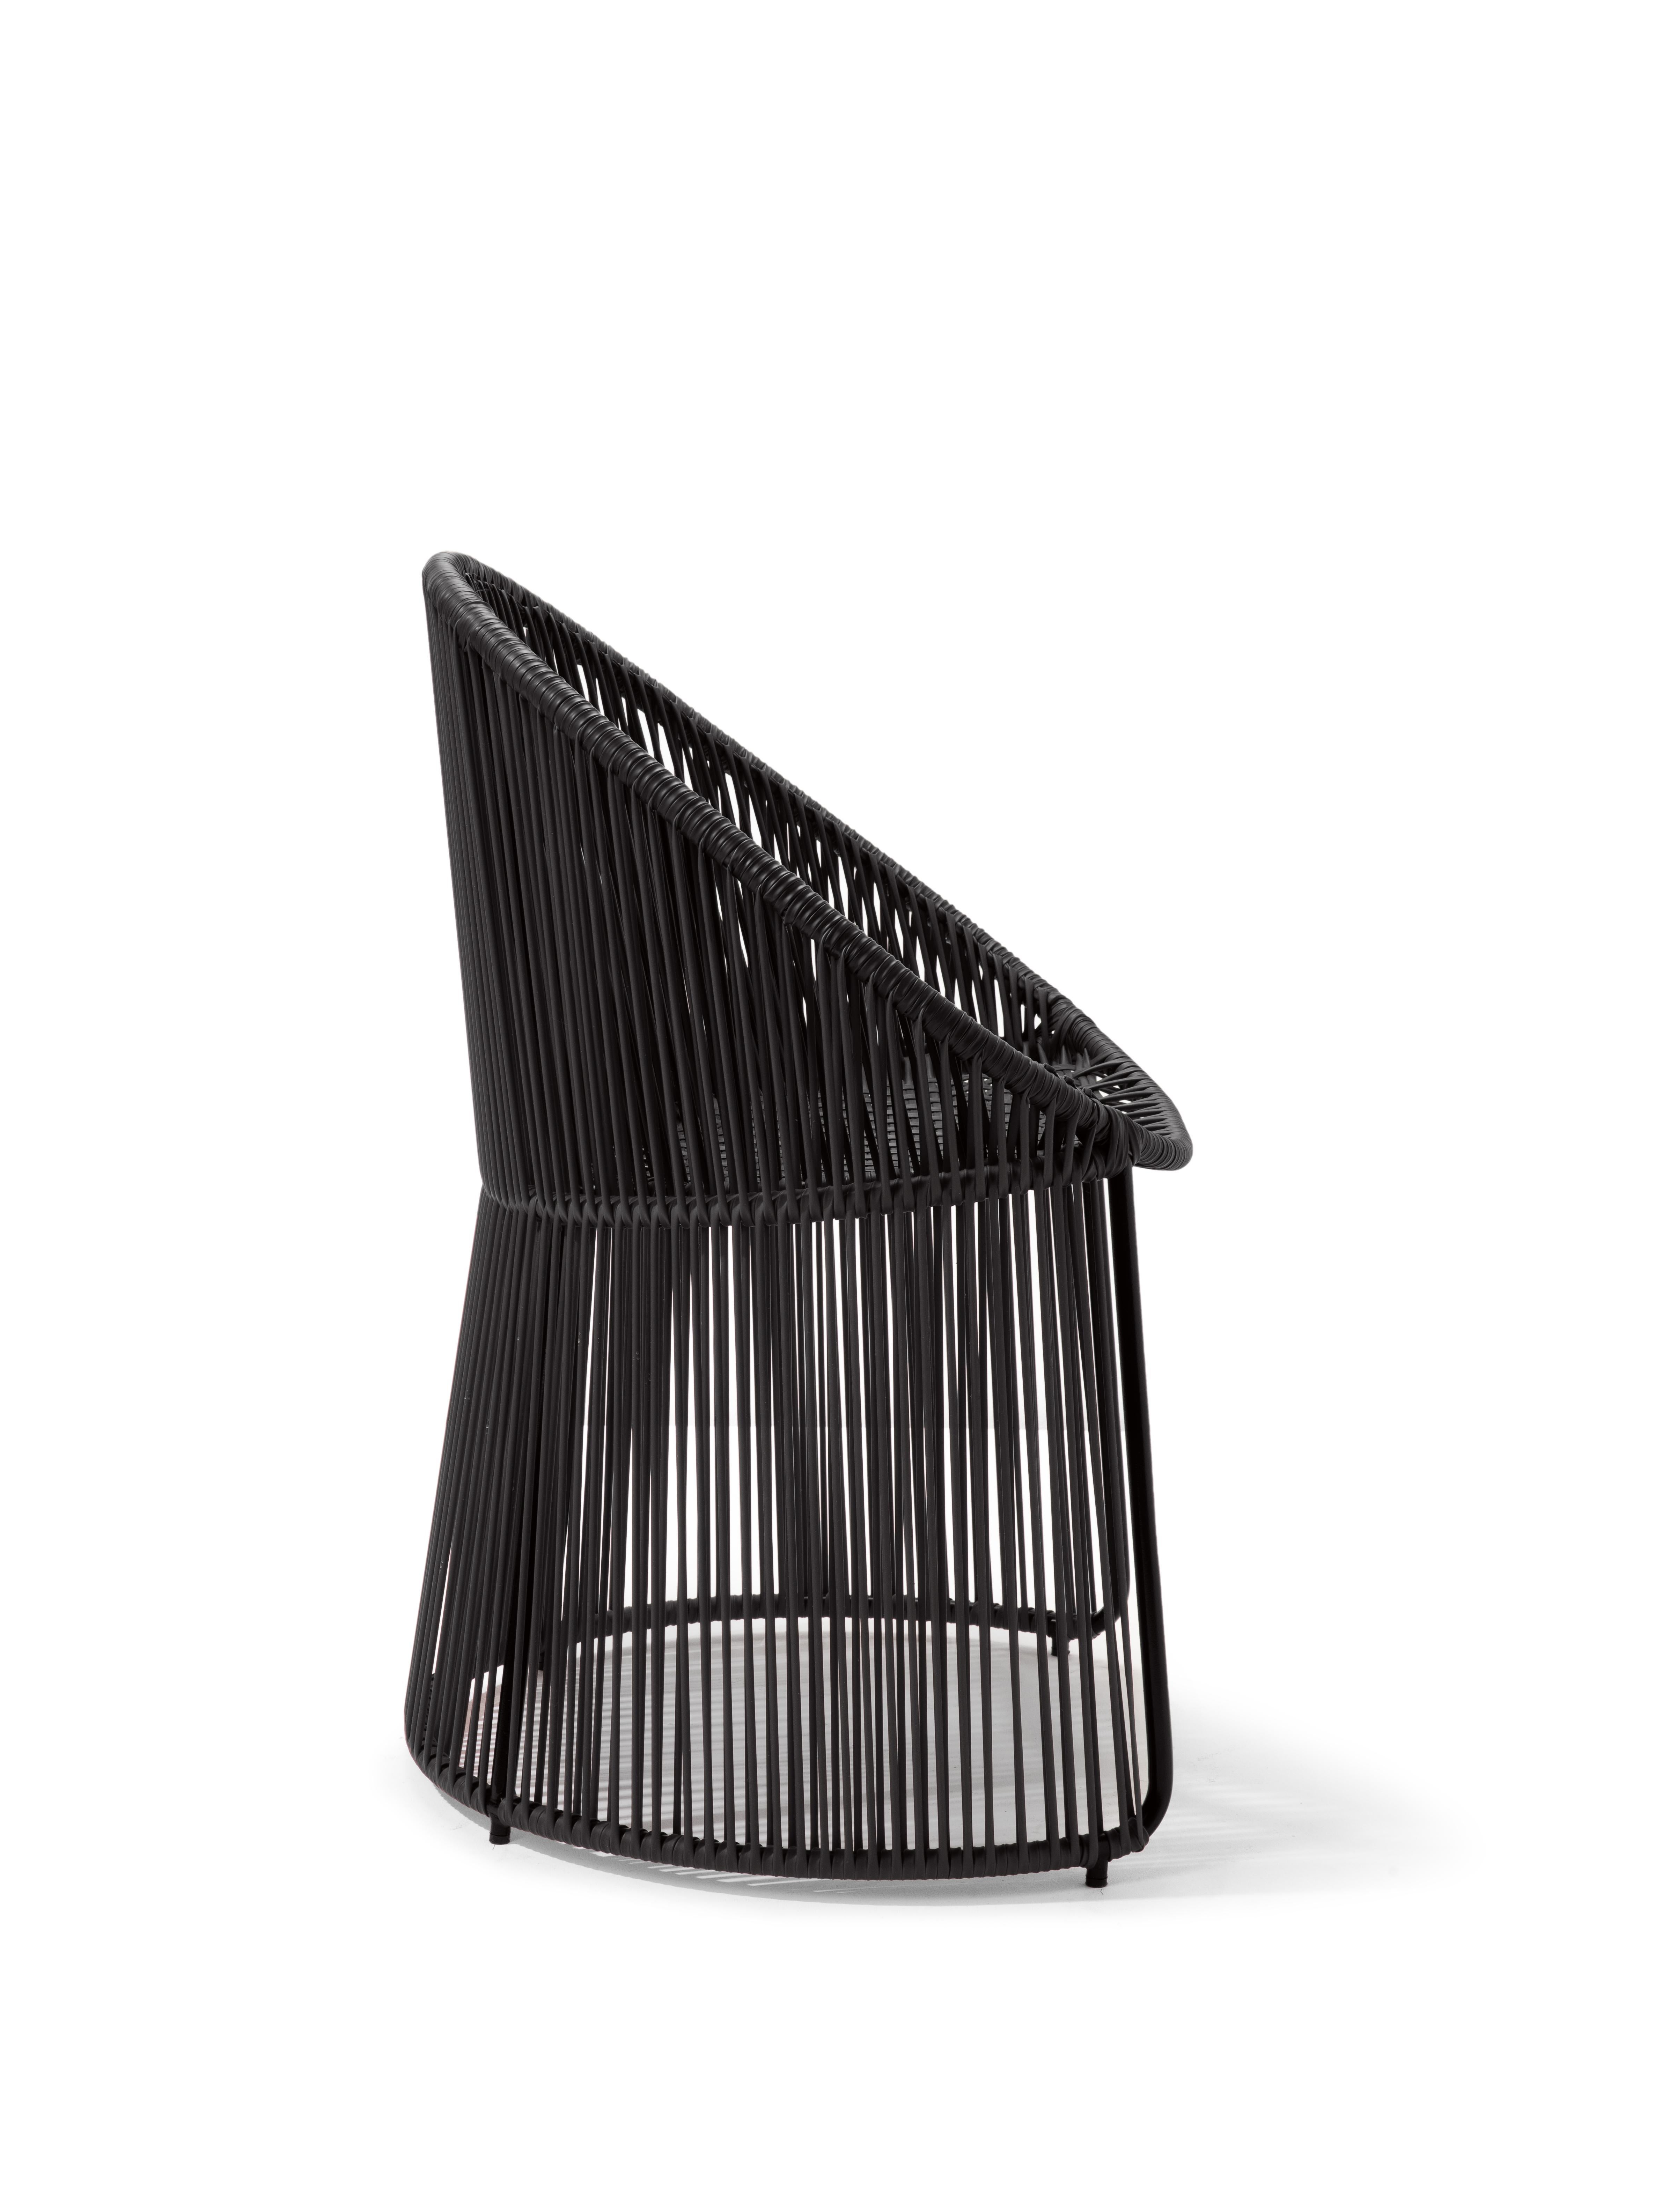 German Set of 4 Black Cartagenas Dining Chair by Sebastian Herkner For Sale